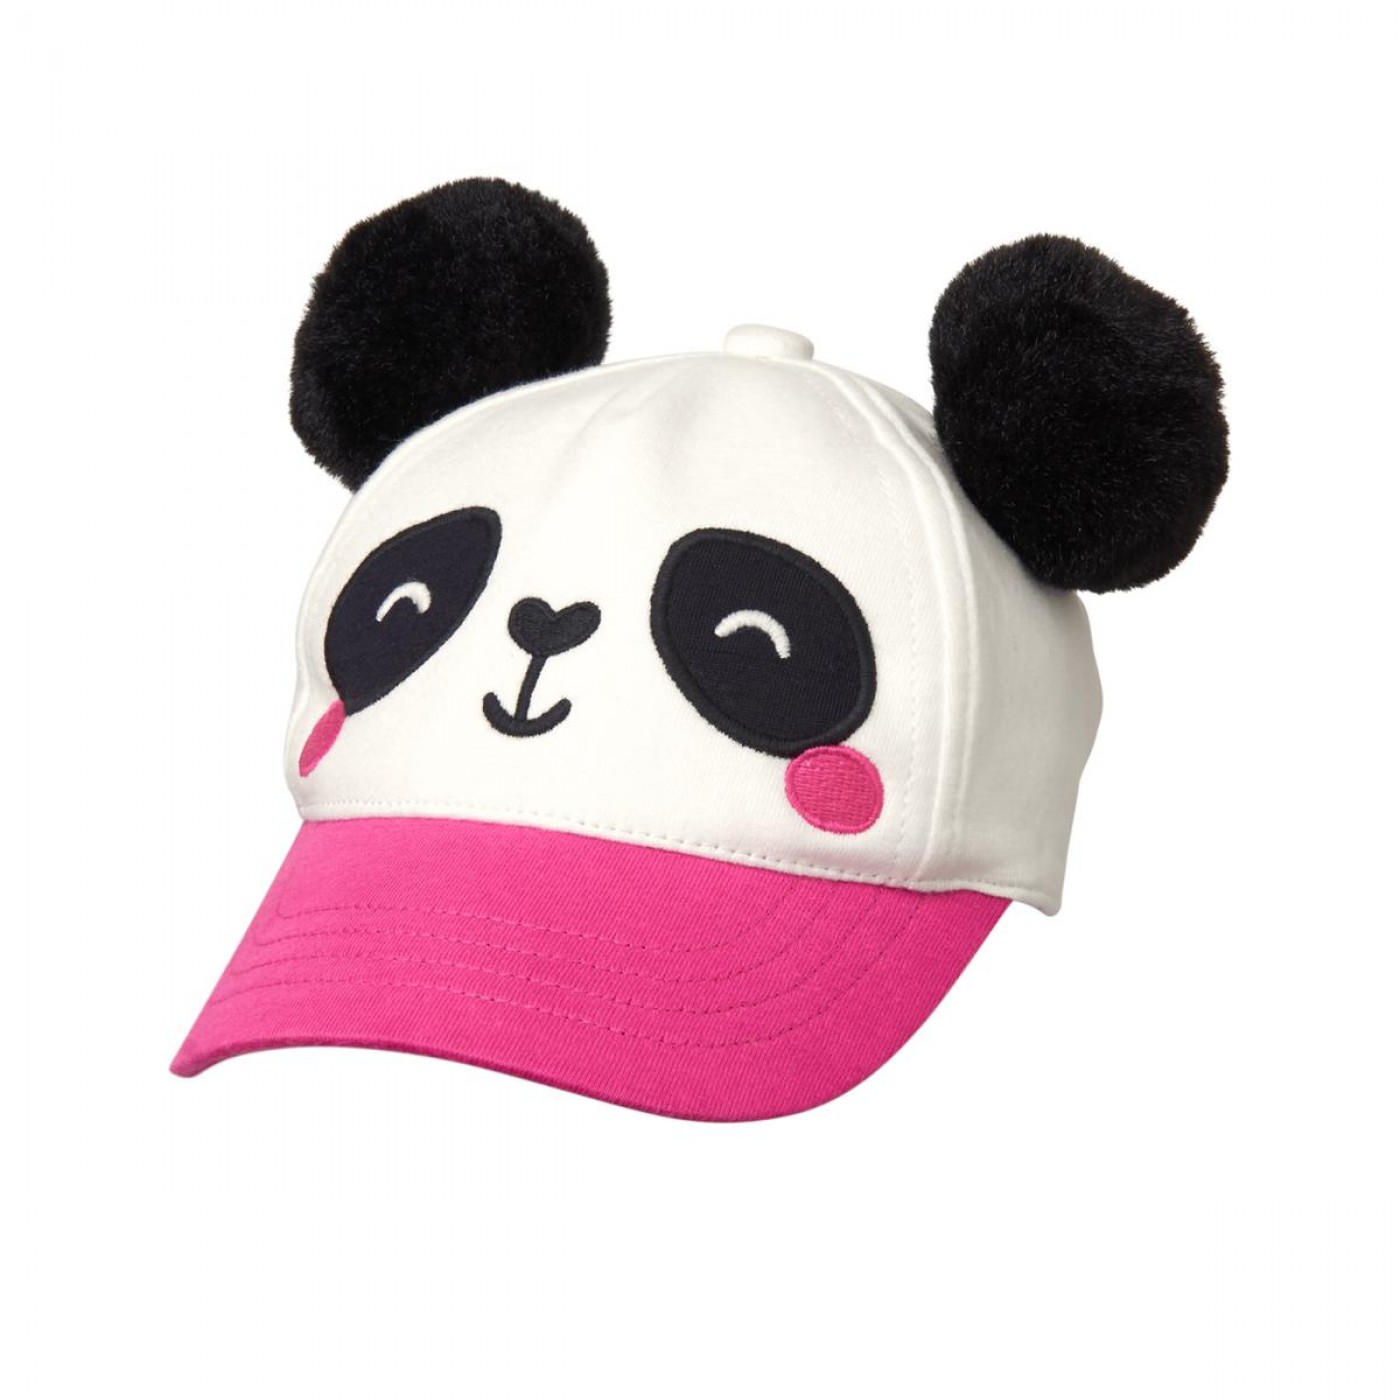 毛球熊貓帽子